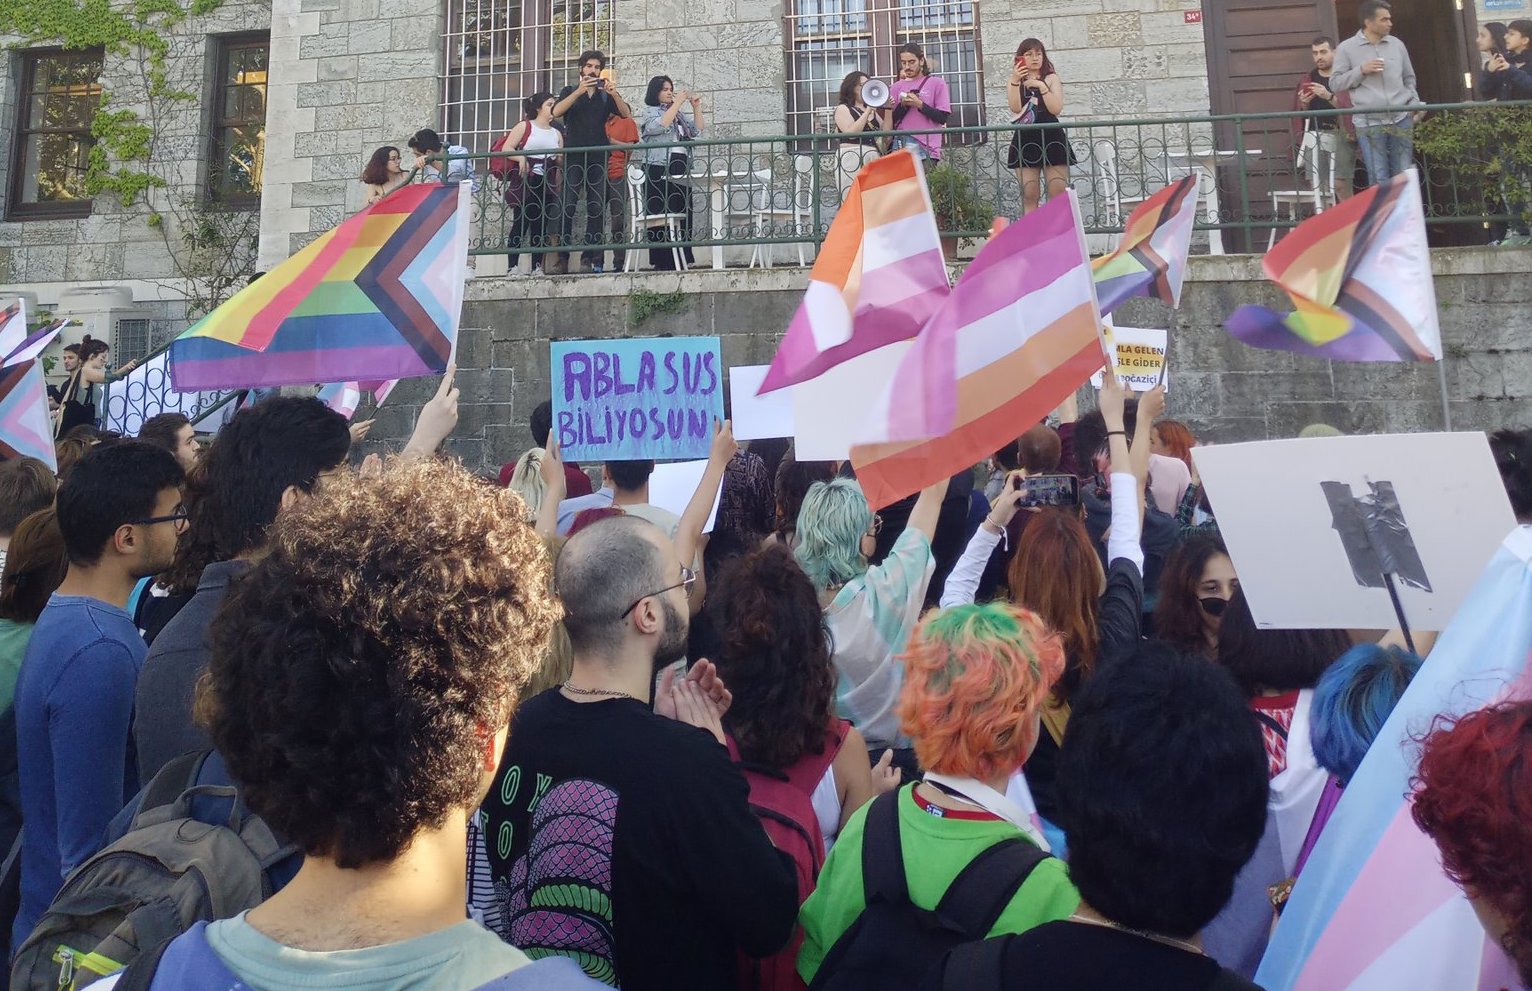 Boğaziçi Onur Yürüyüşü’nde yaşananlar: Burada ne olduğunu herkes bilmeli! | Kaos GL - LGBTİ+ Haber Portalı